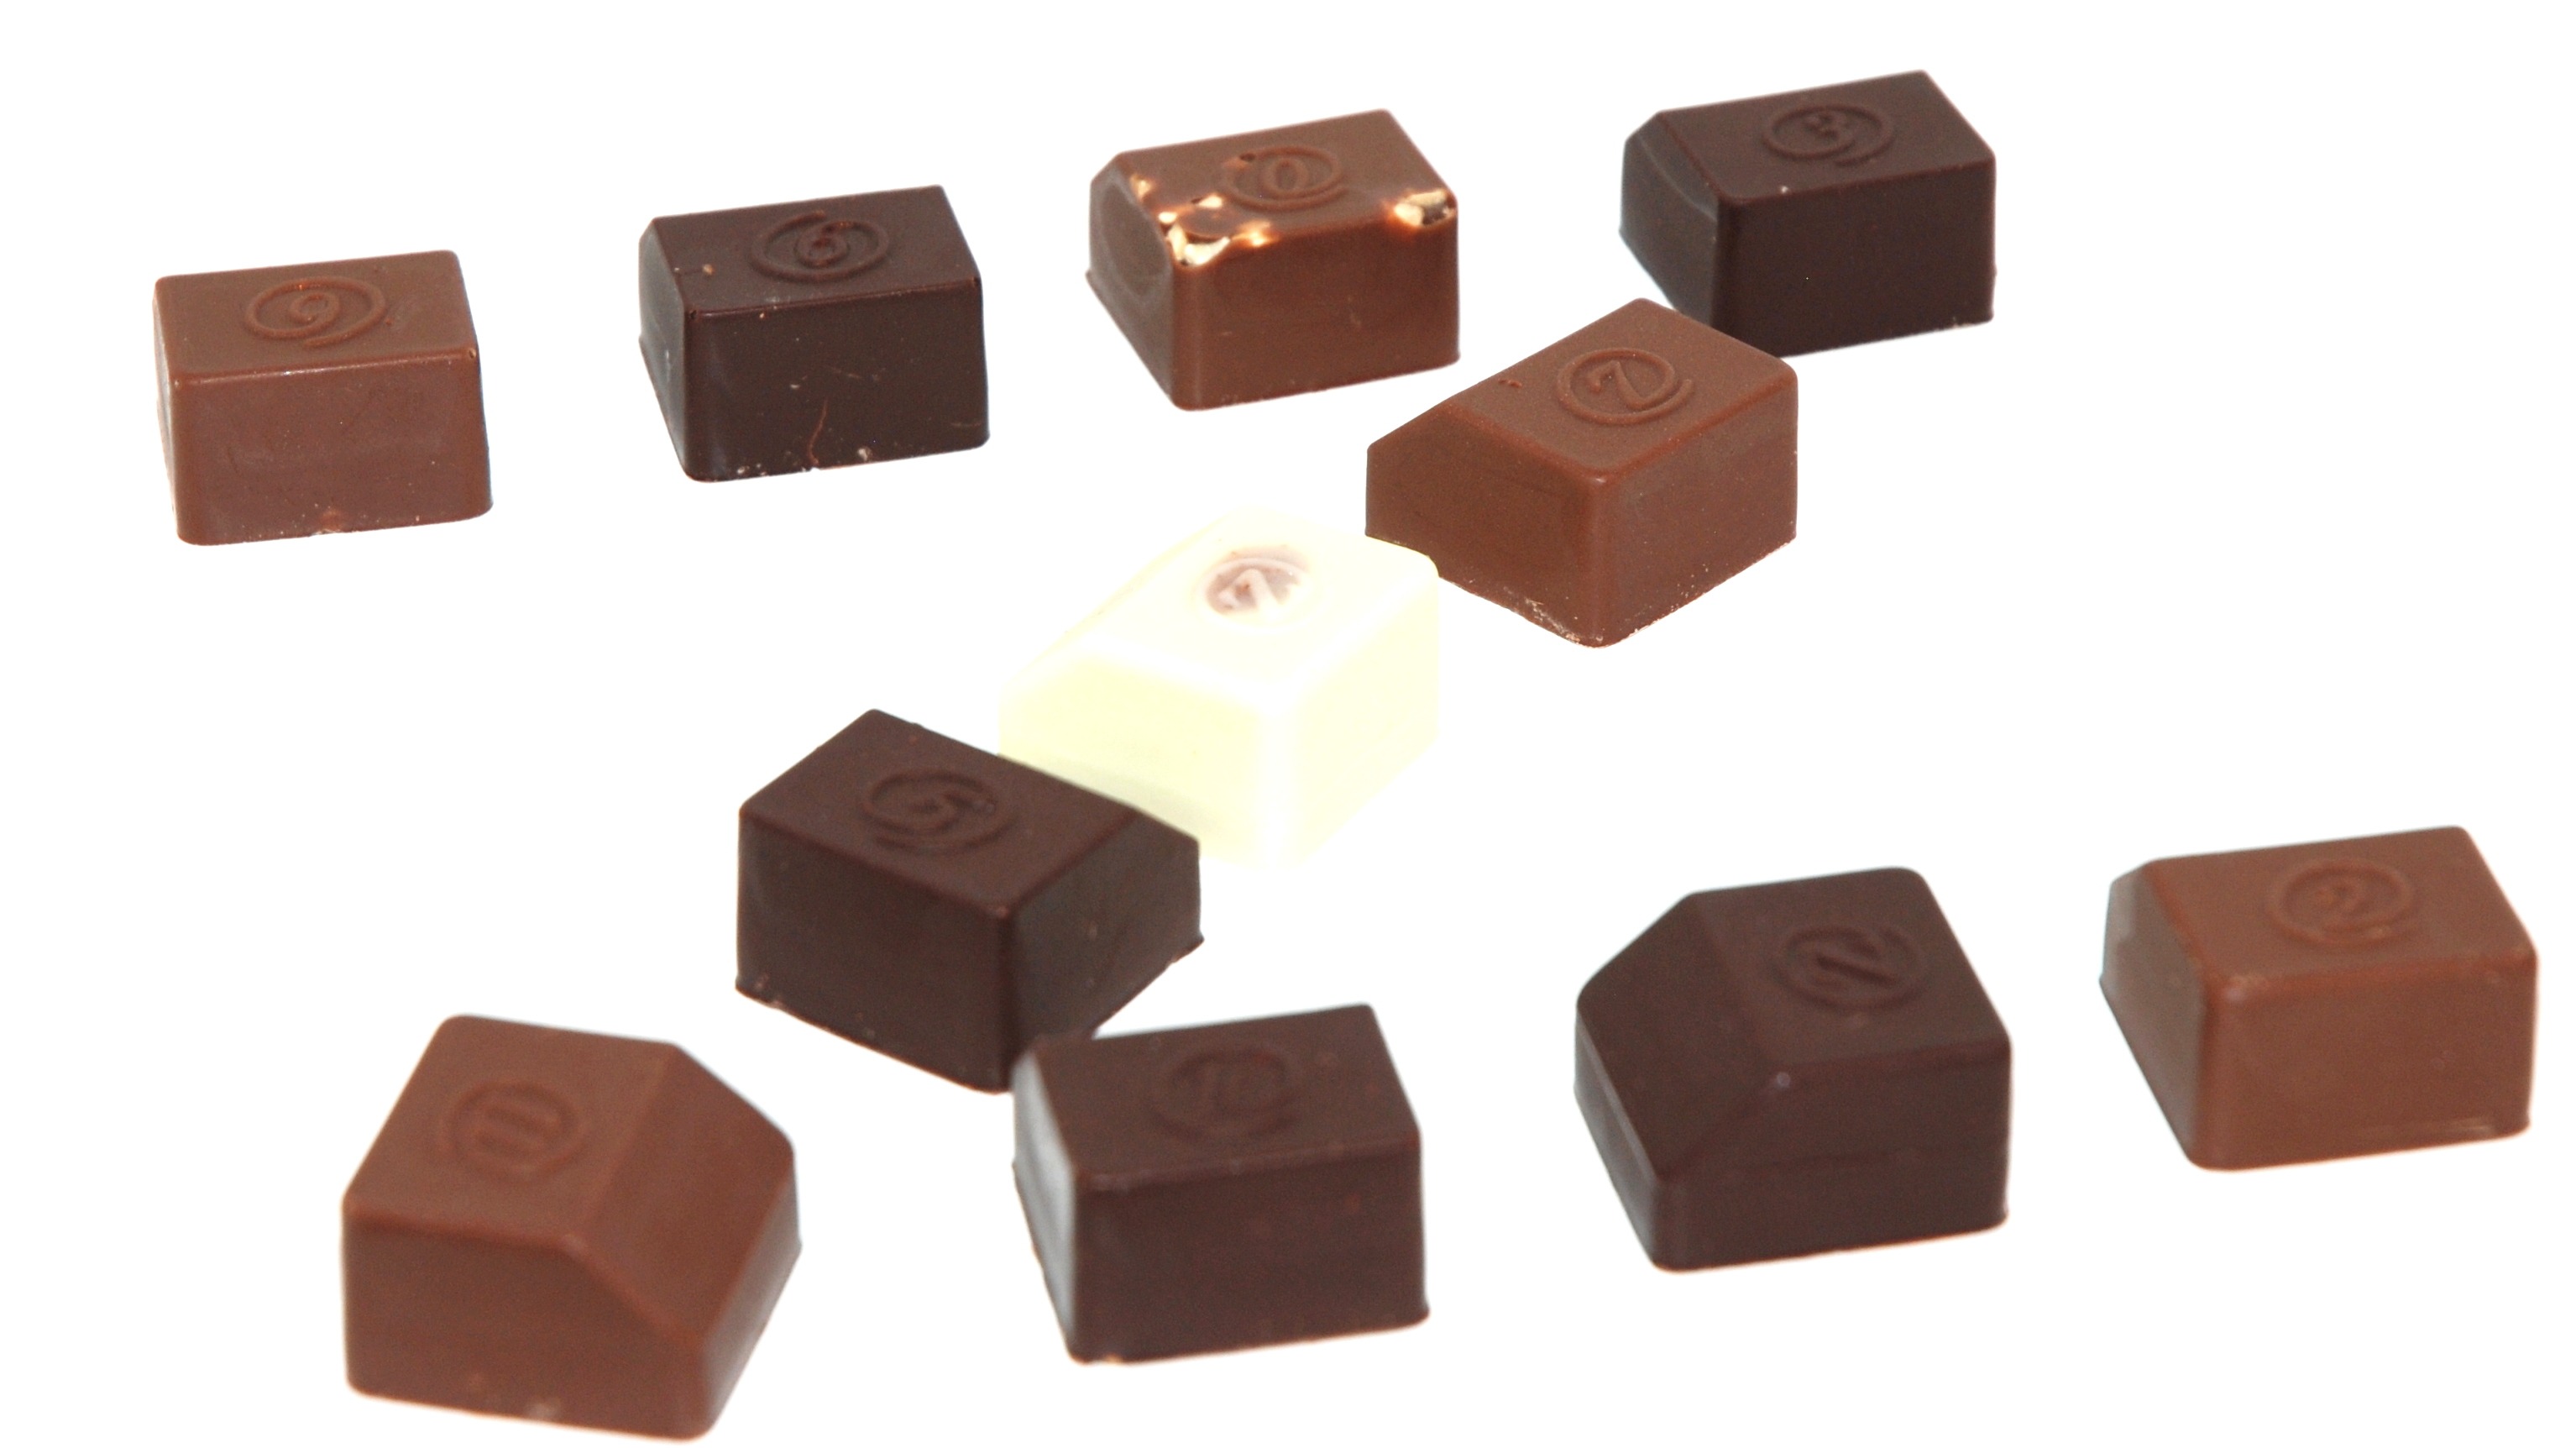 Vegan Chocolates - zChocolat